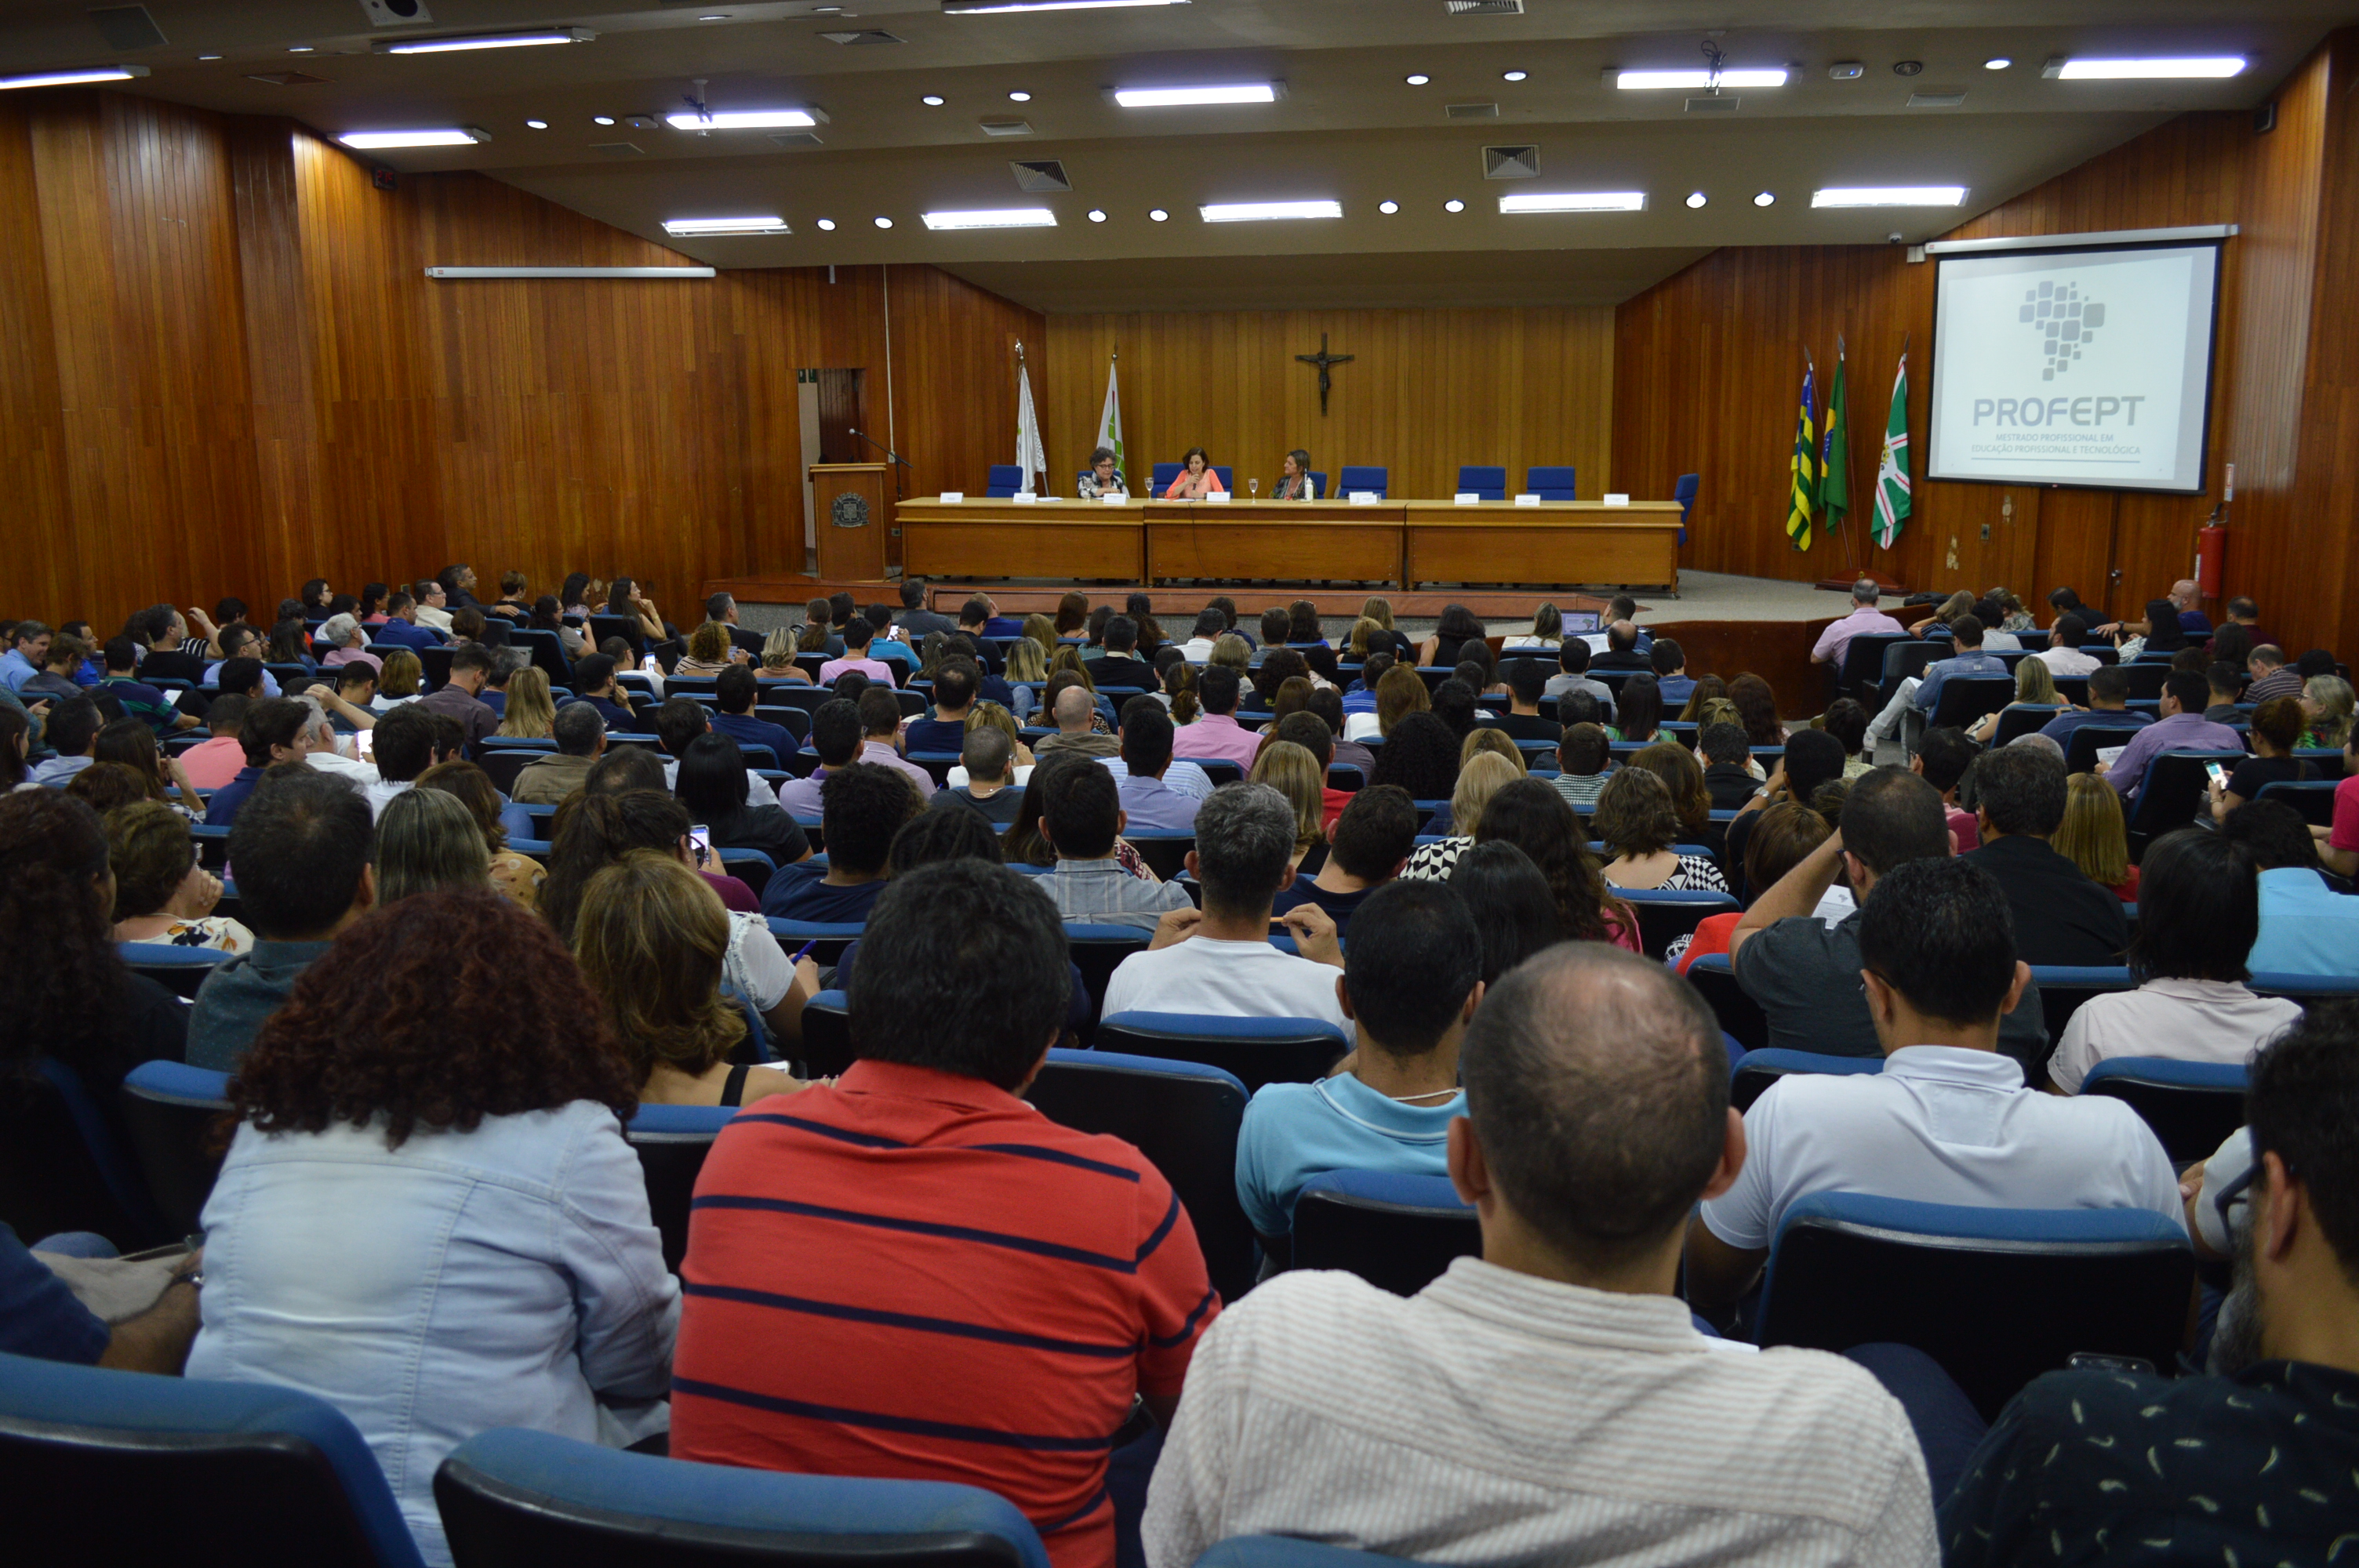 IV Seminário de alinhamento do Mestrado em Educação Profissional e Tecnológica ocorre no auditório da Câmara Municipal de Goiânia